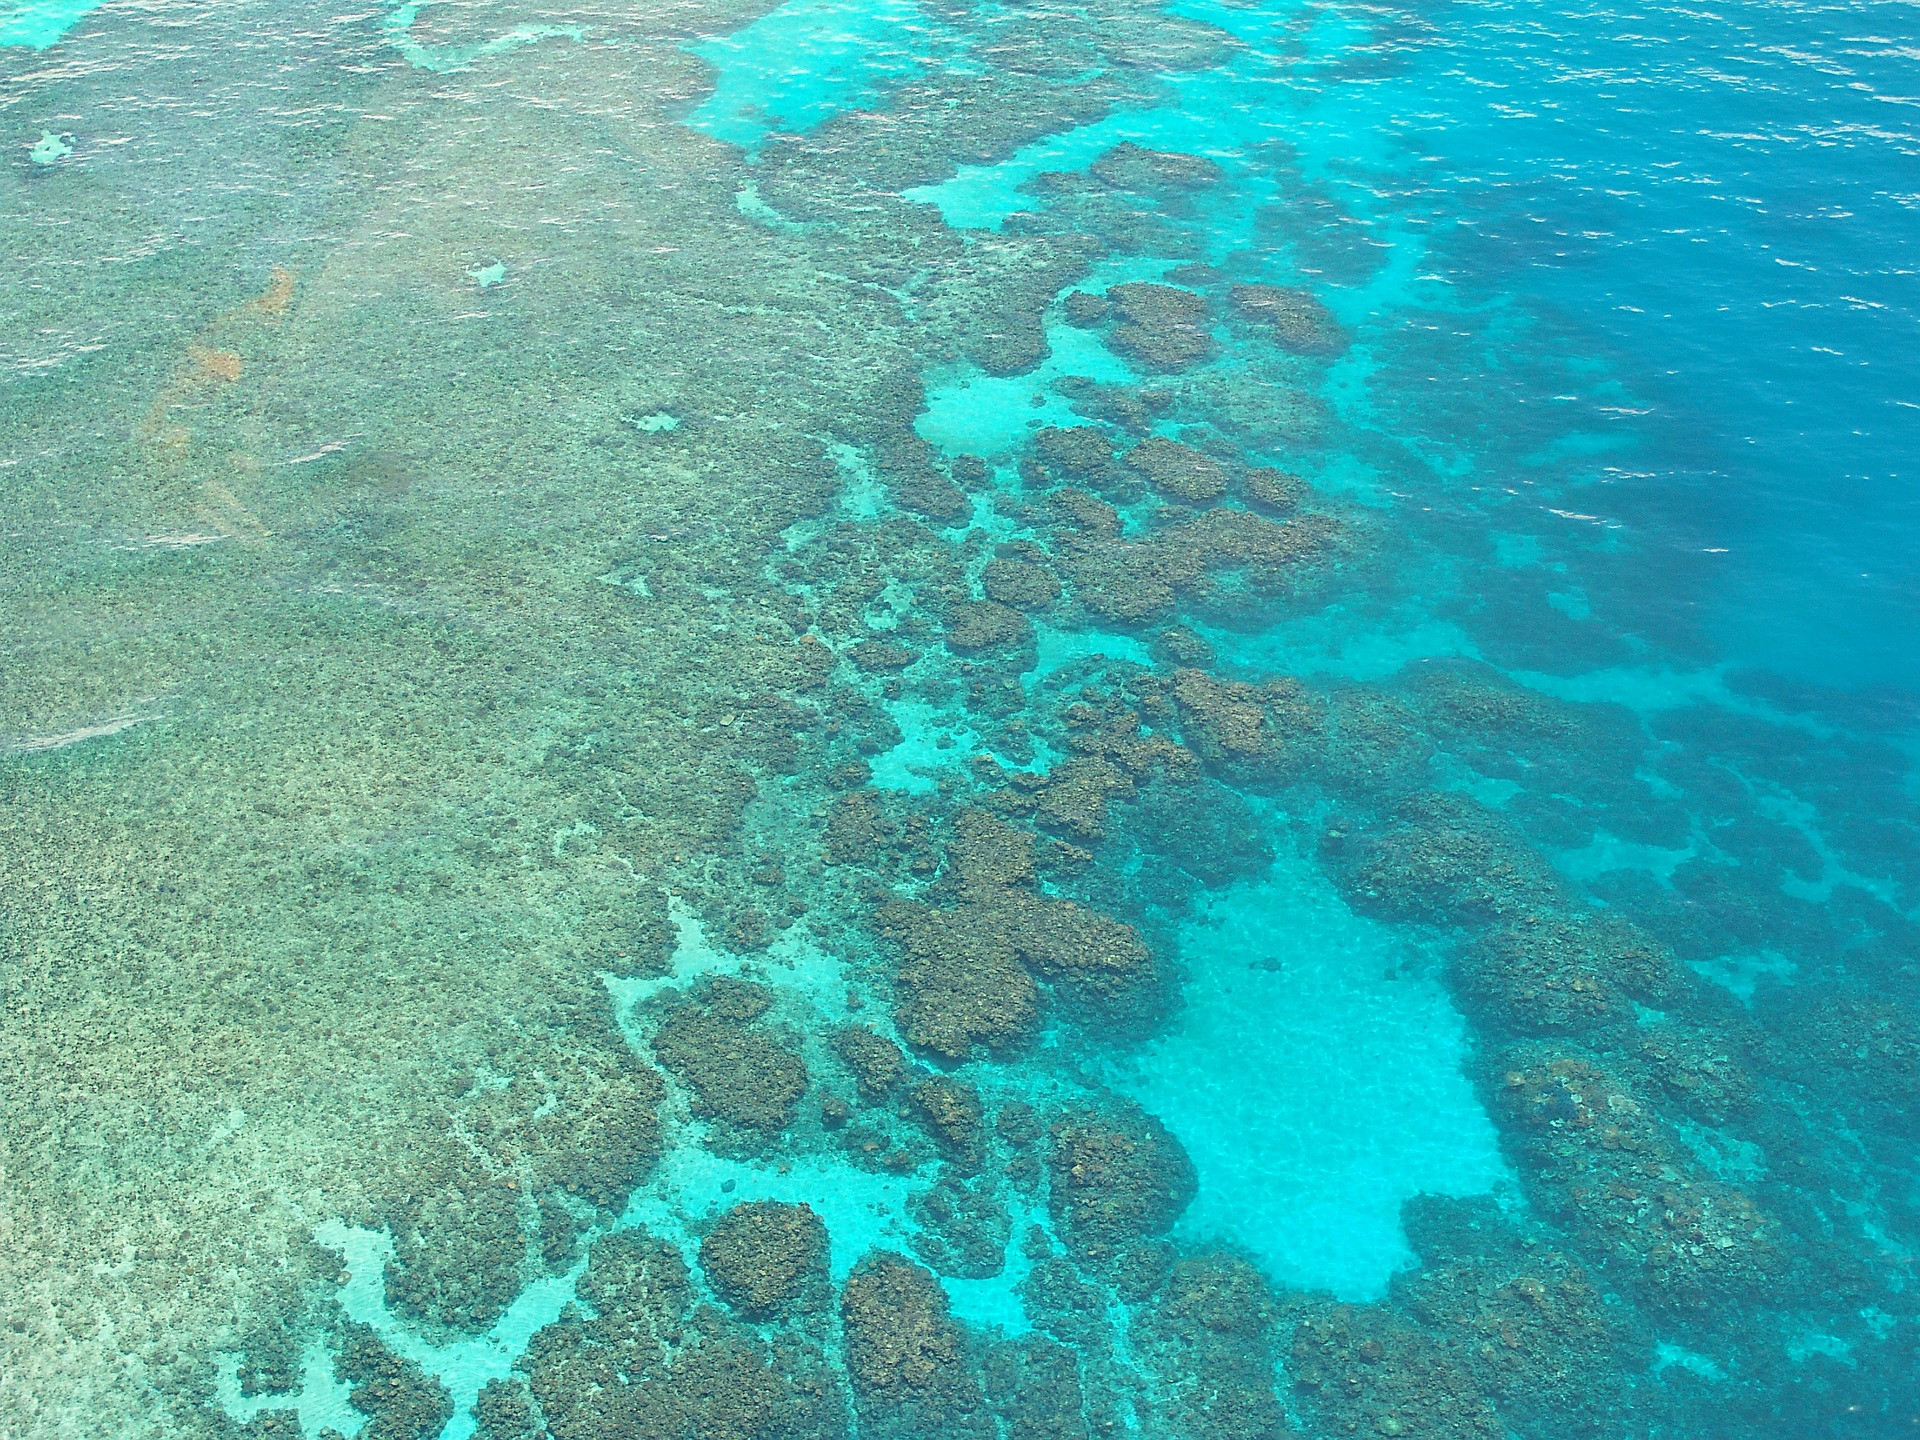 Austrálsky Veľký bariérový útes v roku 2015 len tak tak unikol tomu, aby ho zaradili do zoznamu ohrozeného svetového kultúrneho dedičstva UNESCO. V júli 2016 už vyhlásili, že 25 percent z útesu je zničených kvôli vymieraniu korálov. Bielenie koralov spôsobujú vysoké teploty vody. Organizmy, ktoré žijú s koralmi v symbióze a dodávajú im sfarbenie, ich v takýchto podmienkach opúšťajú. Ak zmiznú všetky riasy, koraly umierajú a útesy sa drobia. Túto katastrofu spôsobujú klimatické zmeny. Niektorí vedci si myslia, že je príliš neskoro na záchranu útesu. Stále však ešte existujú stovky kilometrov zdravého útesu, ktoré sa oplatí vidieť a zároveň sa informovať o miestnych programov, ktoré sa snažia o vyčistenie korálov.
